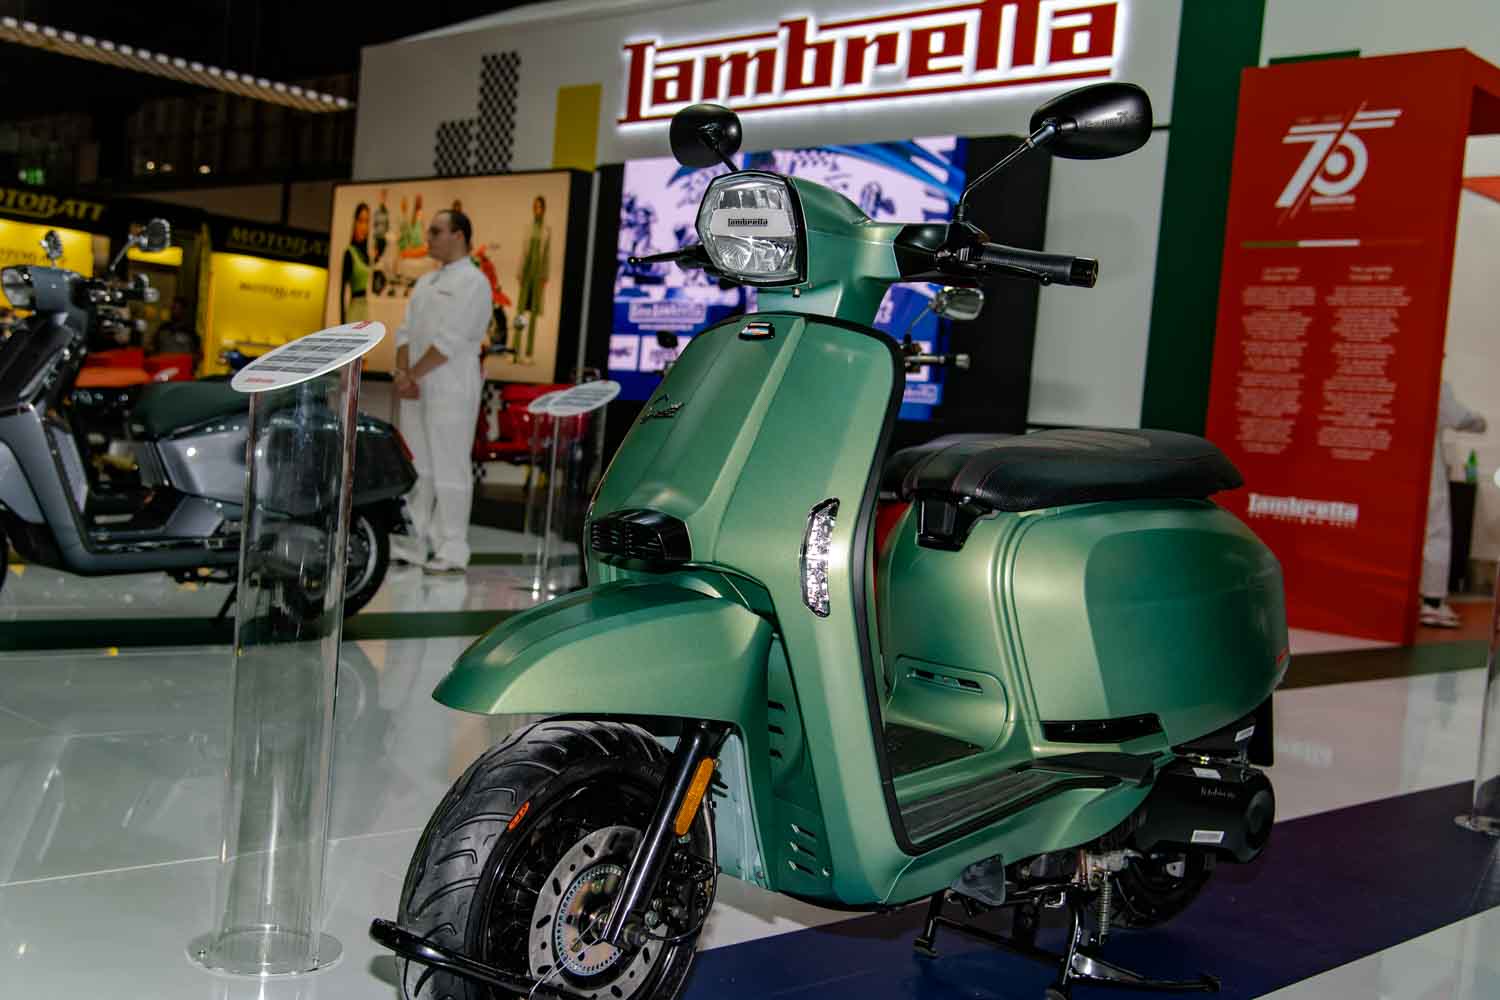 Lambretta, stori brand milanese, raggiunge il suo 75° compleanno e festeggia presentando ad di Eicma 2022 il nuovo X125. 